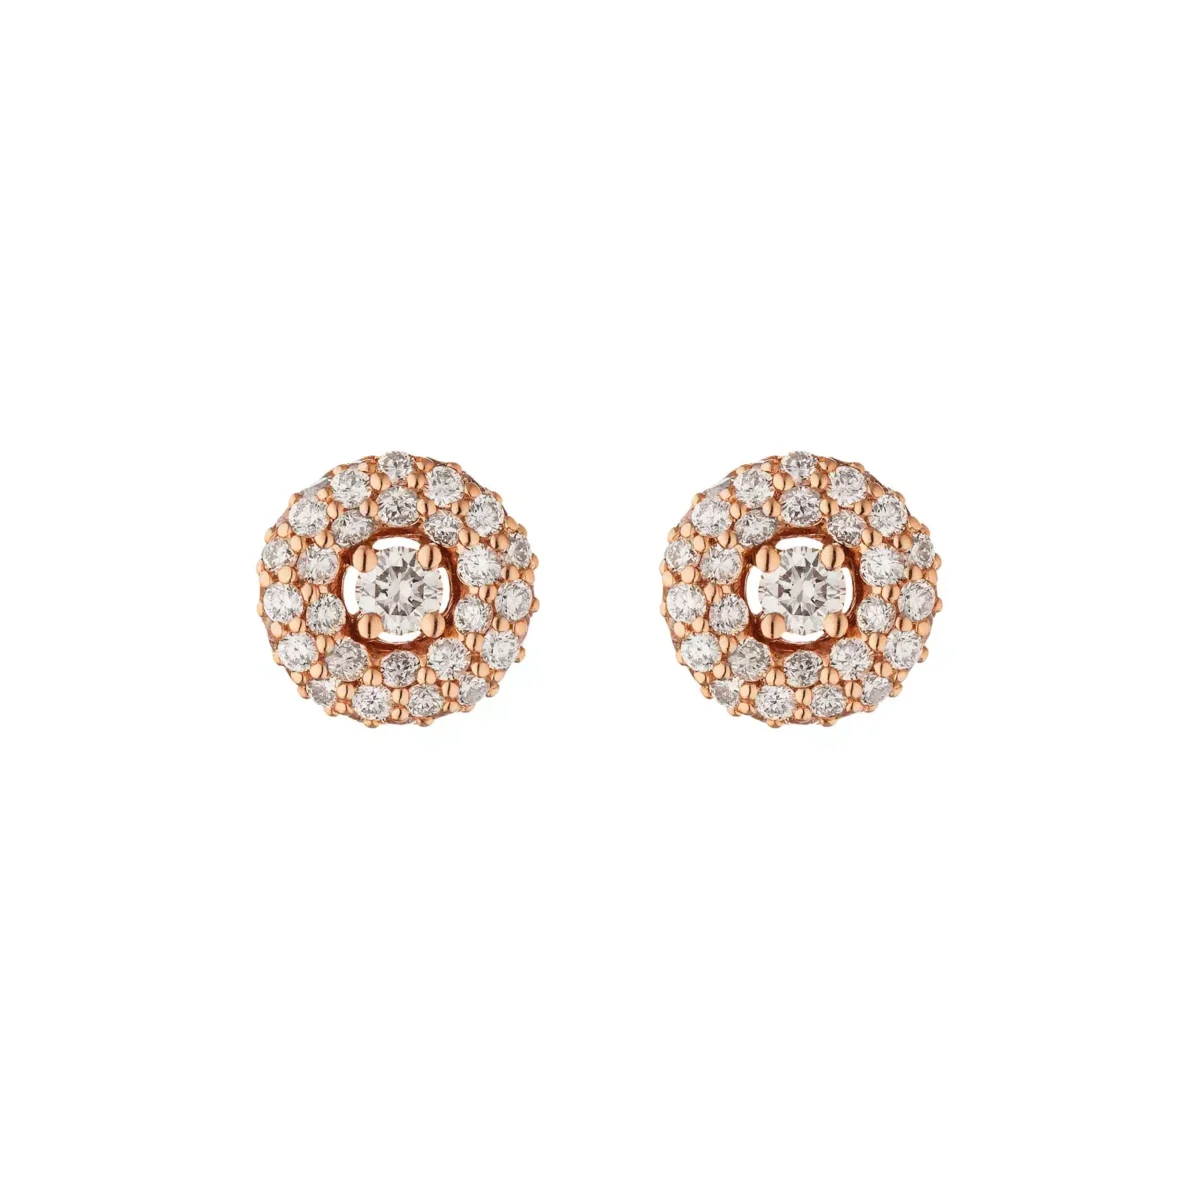 Orecchini Donna Buonocore Gioielli In Oro Rosa Diamanti Bianchi